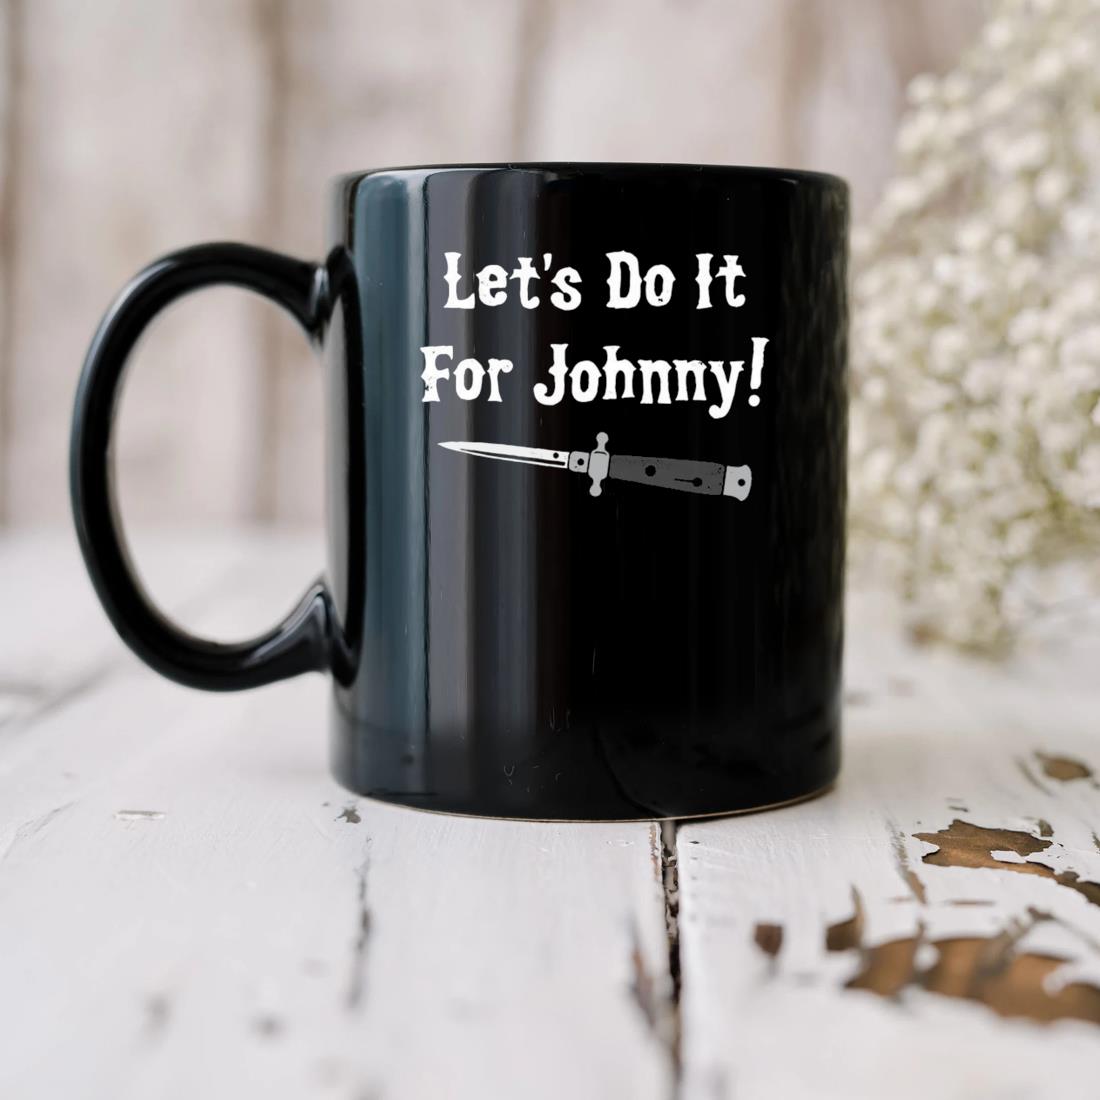 Let's Do It For Johnny Mug